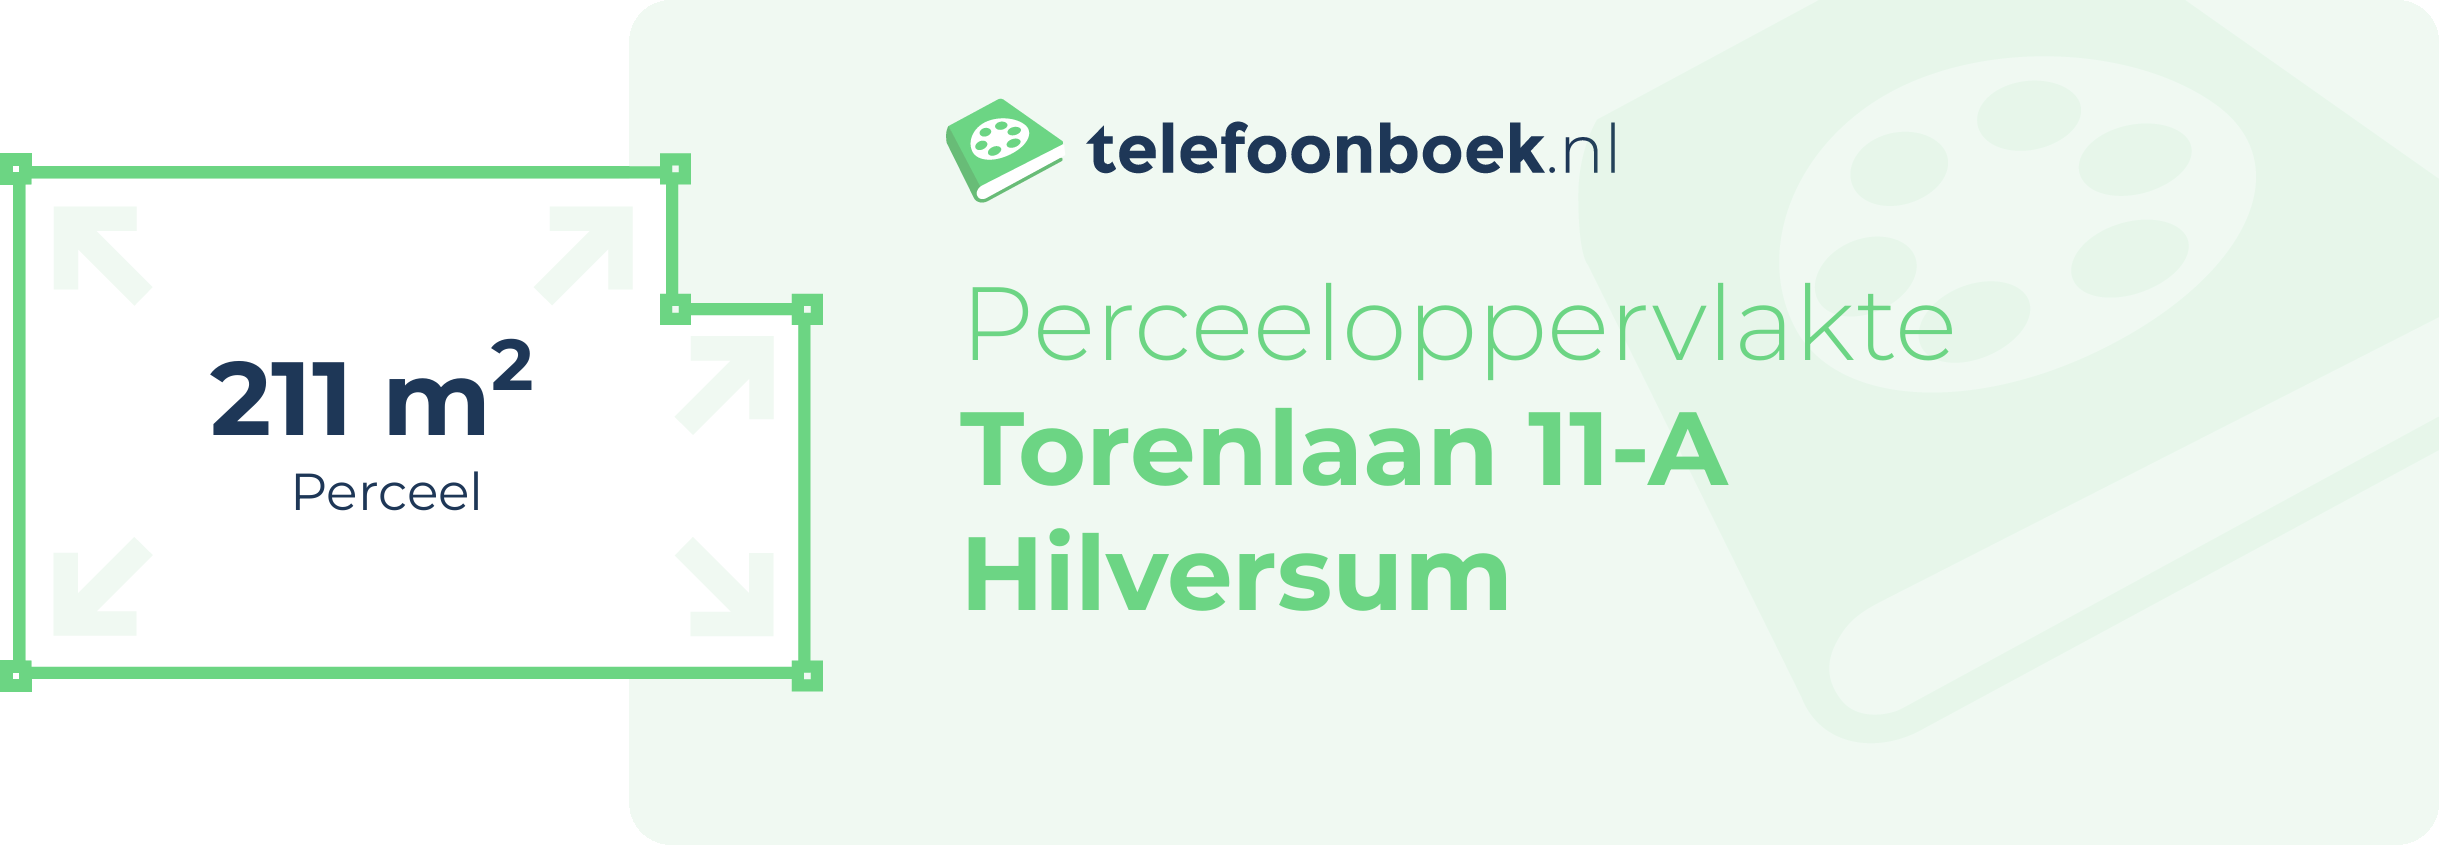 Perceeloppervlakte Torenlaan 11-A Hilversum